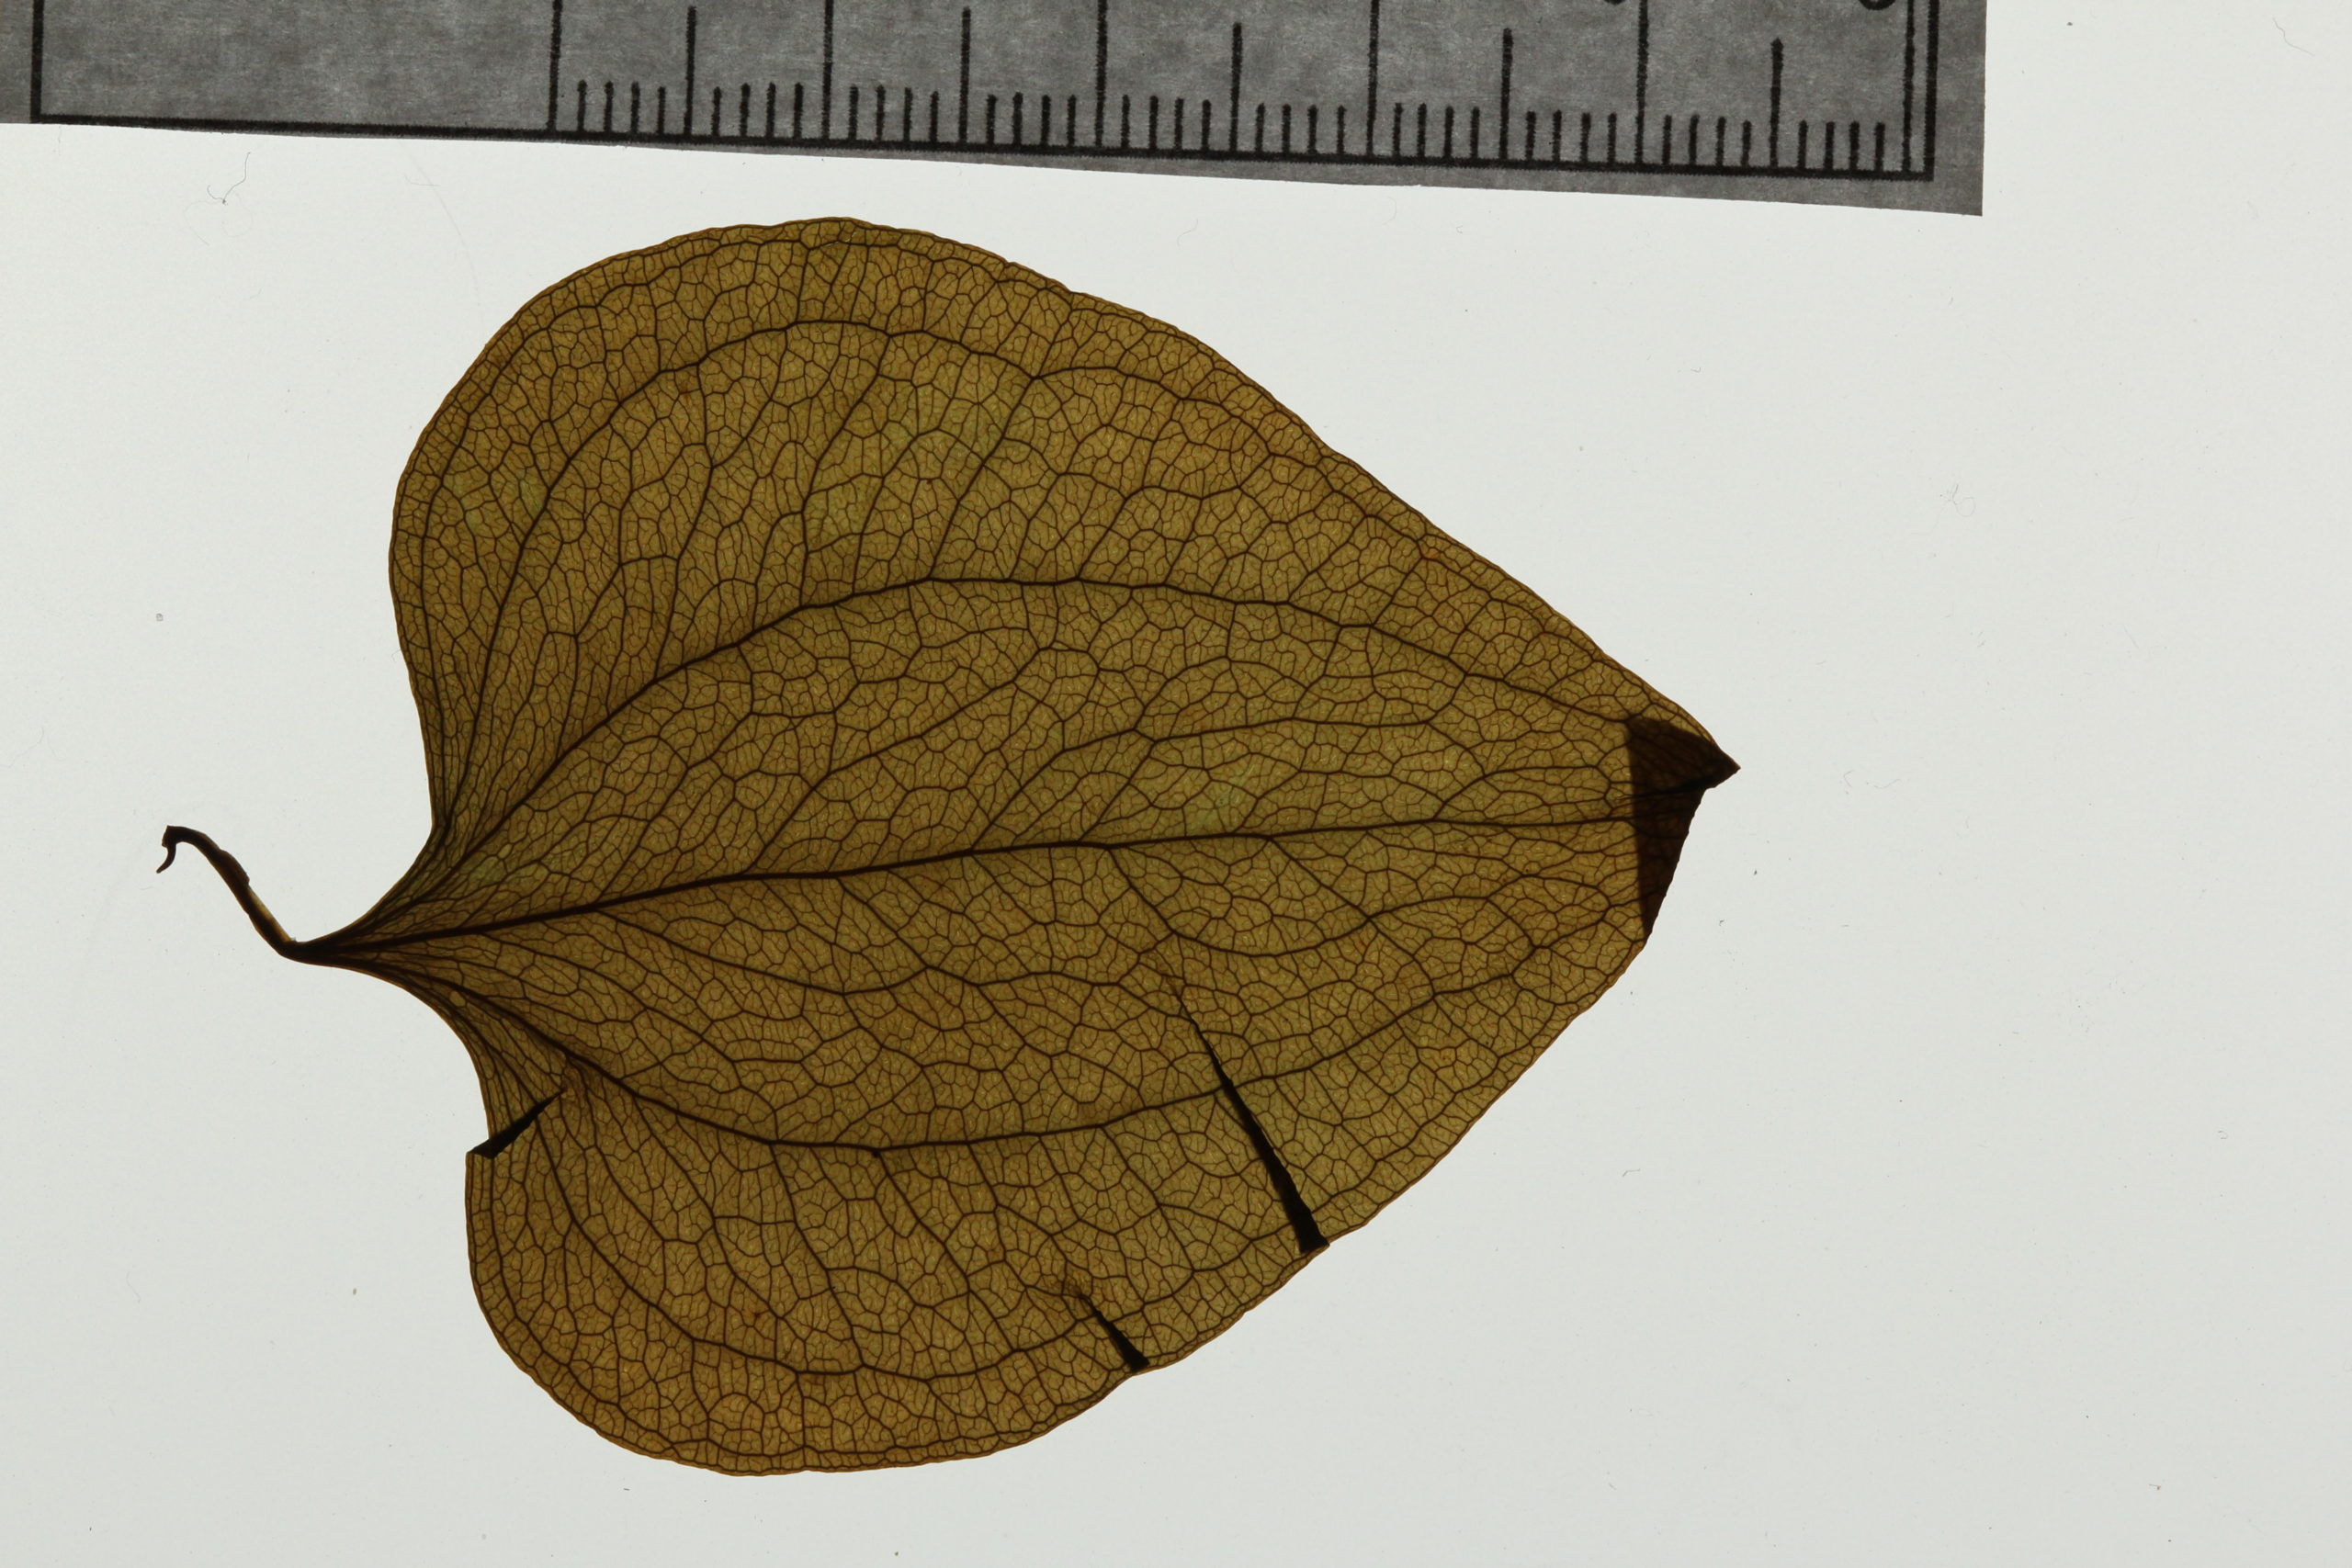 Leaf, Parts + Functions + Venation